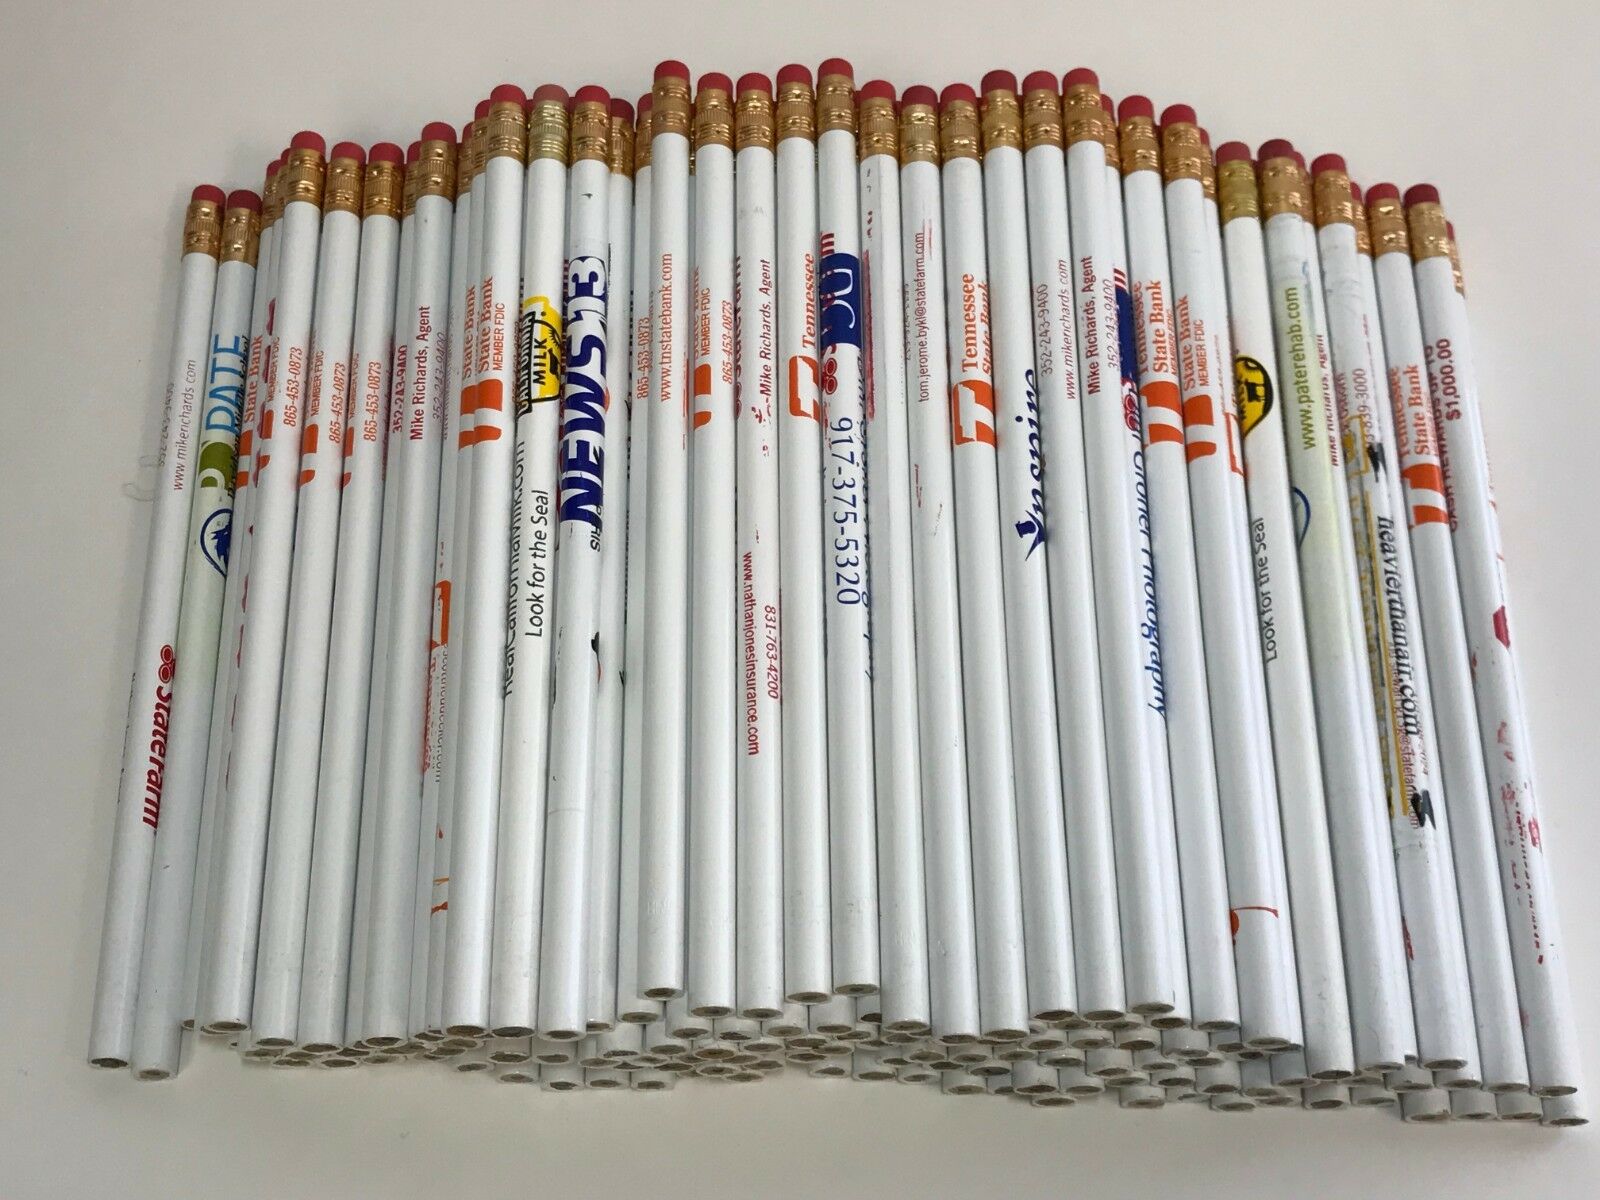 144 Lot Misprint White Pencils With Rubber Eraser #2 Lead, Bulk Wholesale Lot